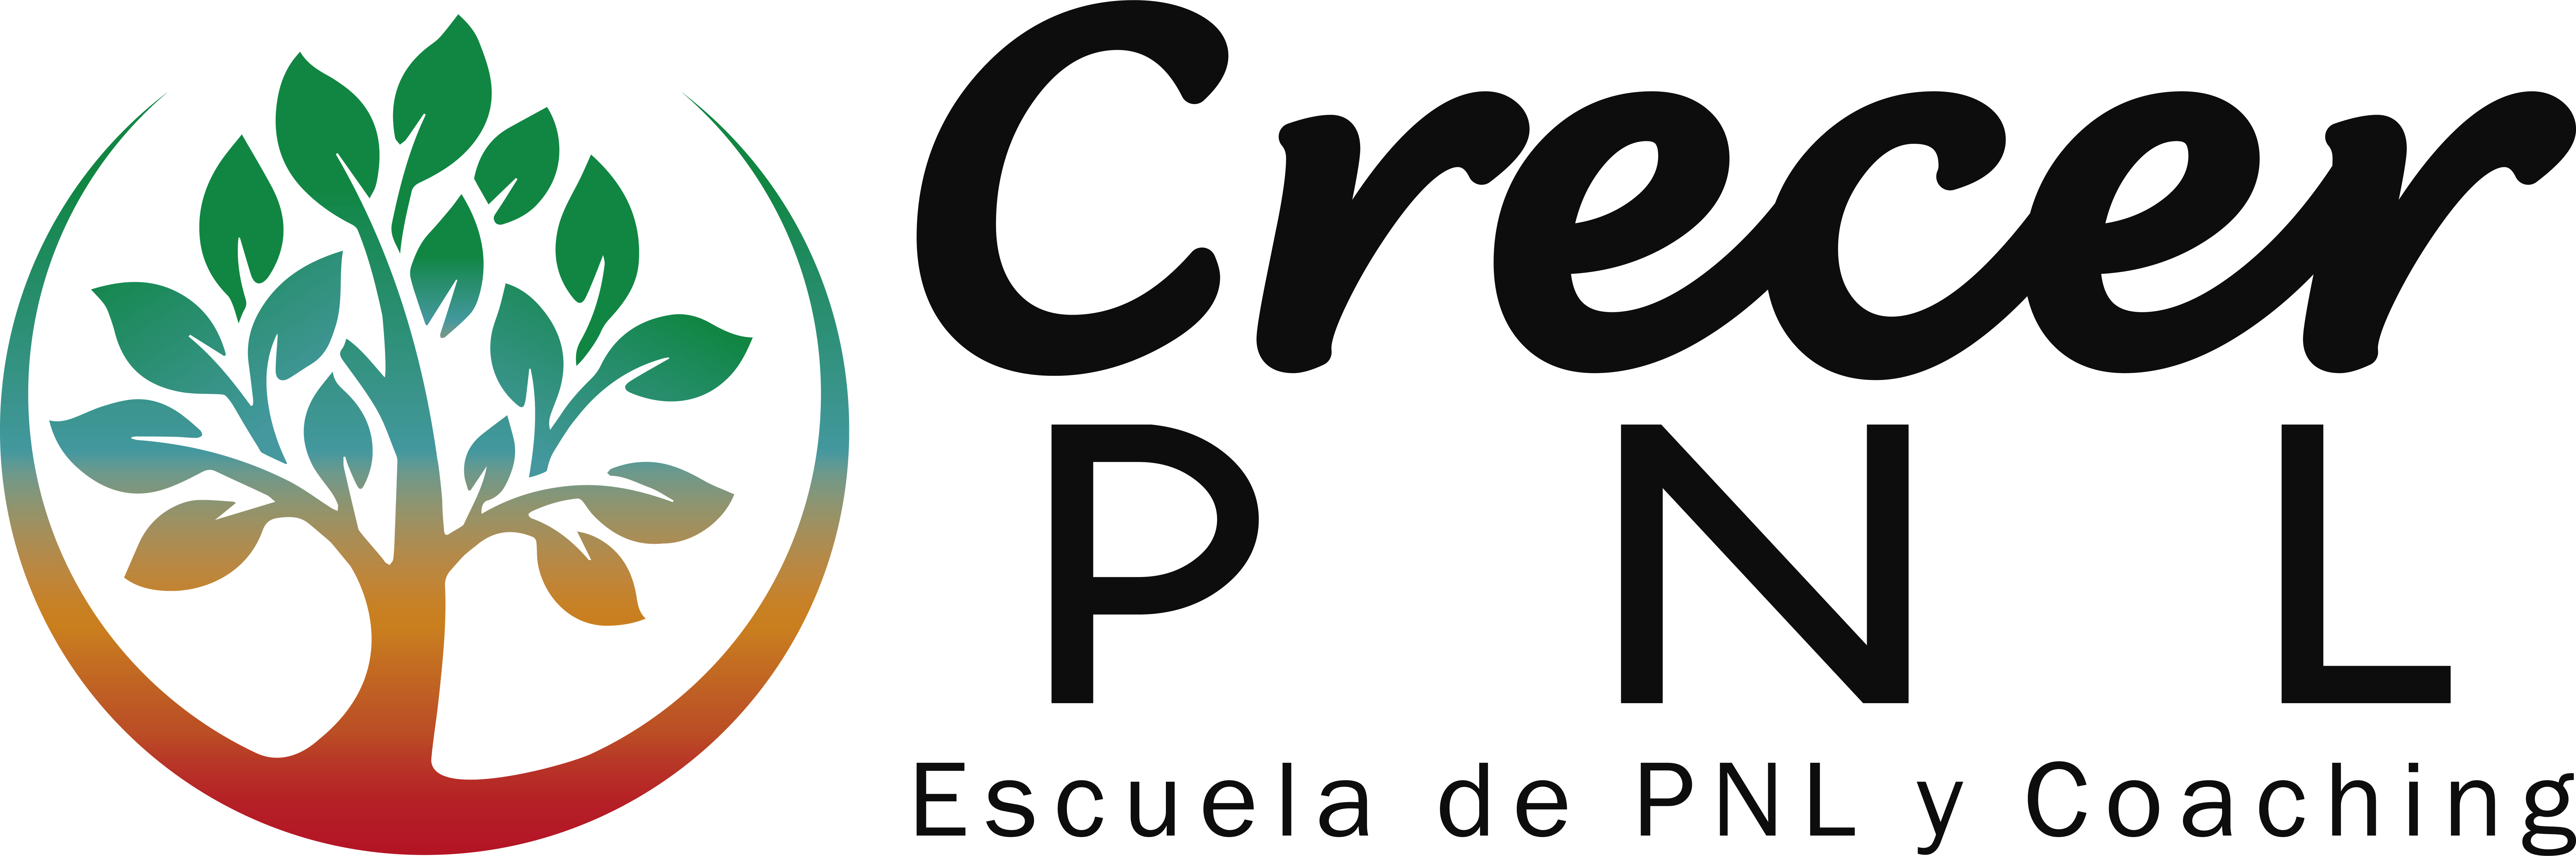 Logo crecer pnl(2)